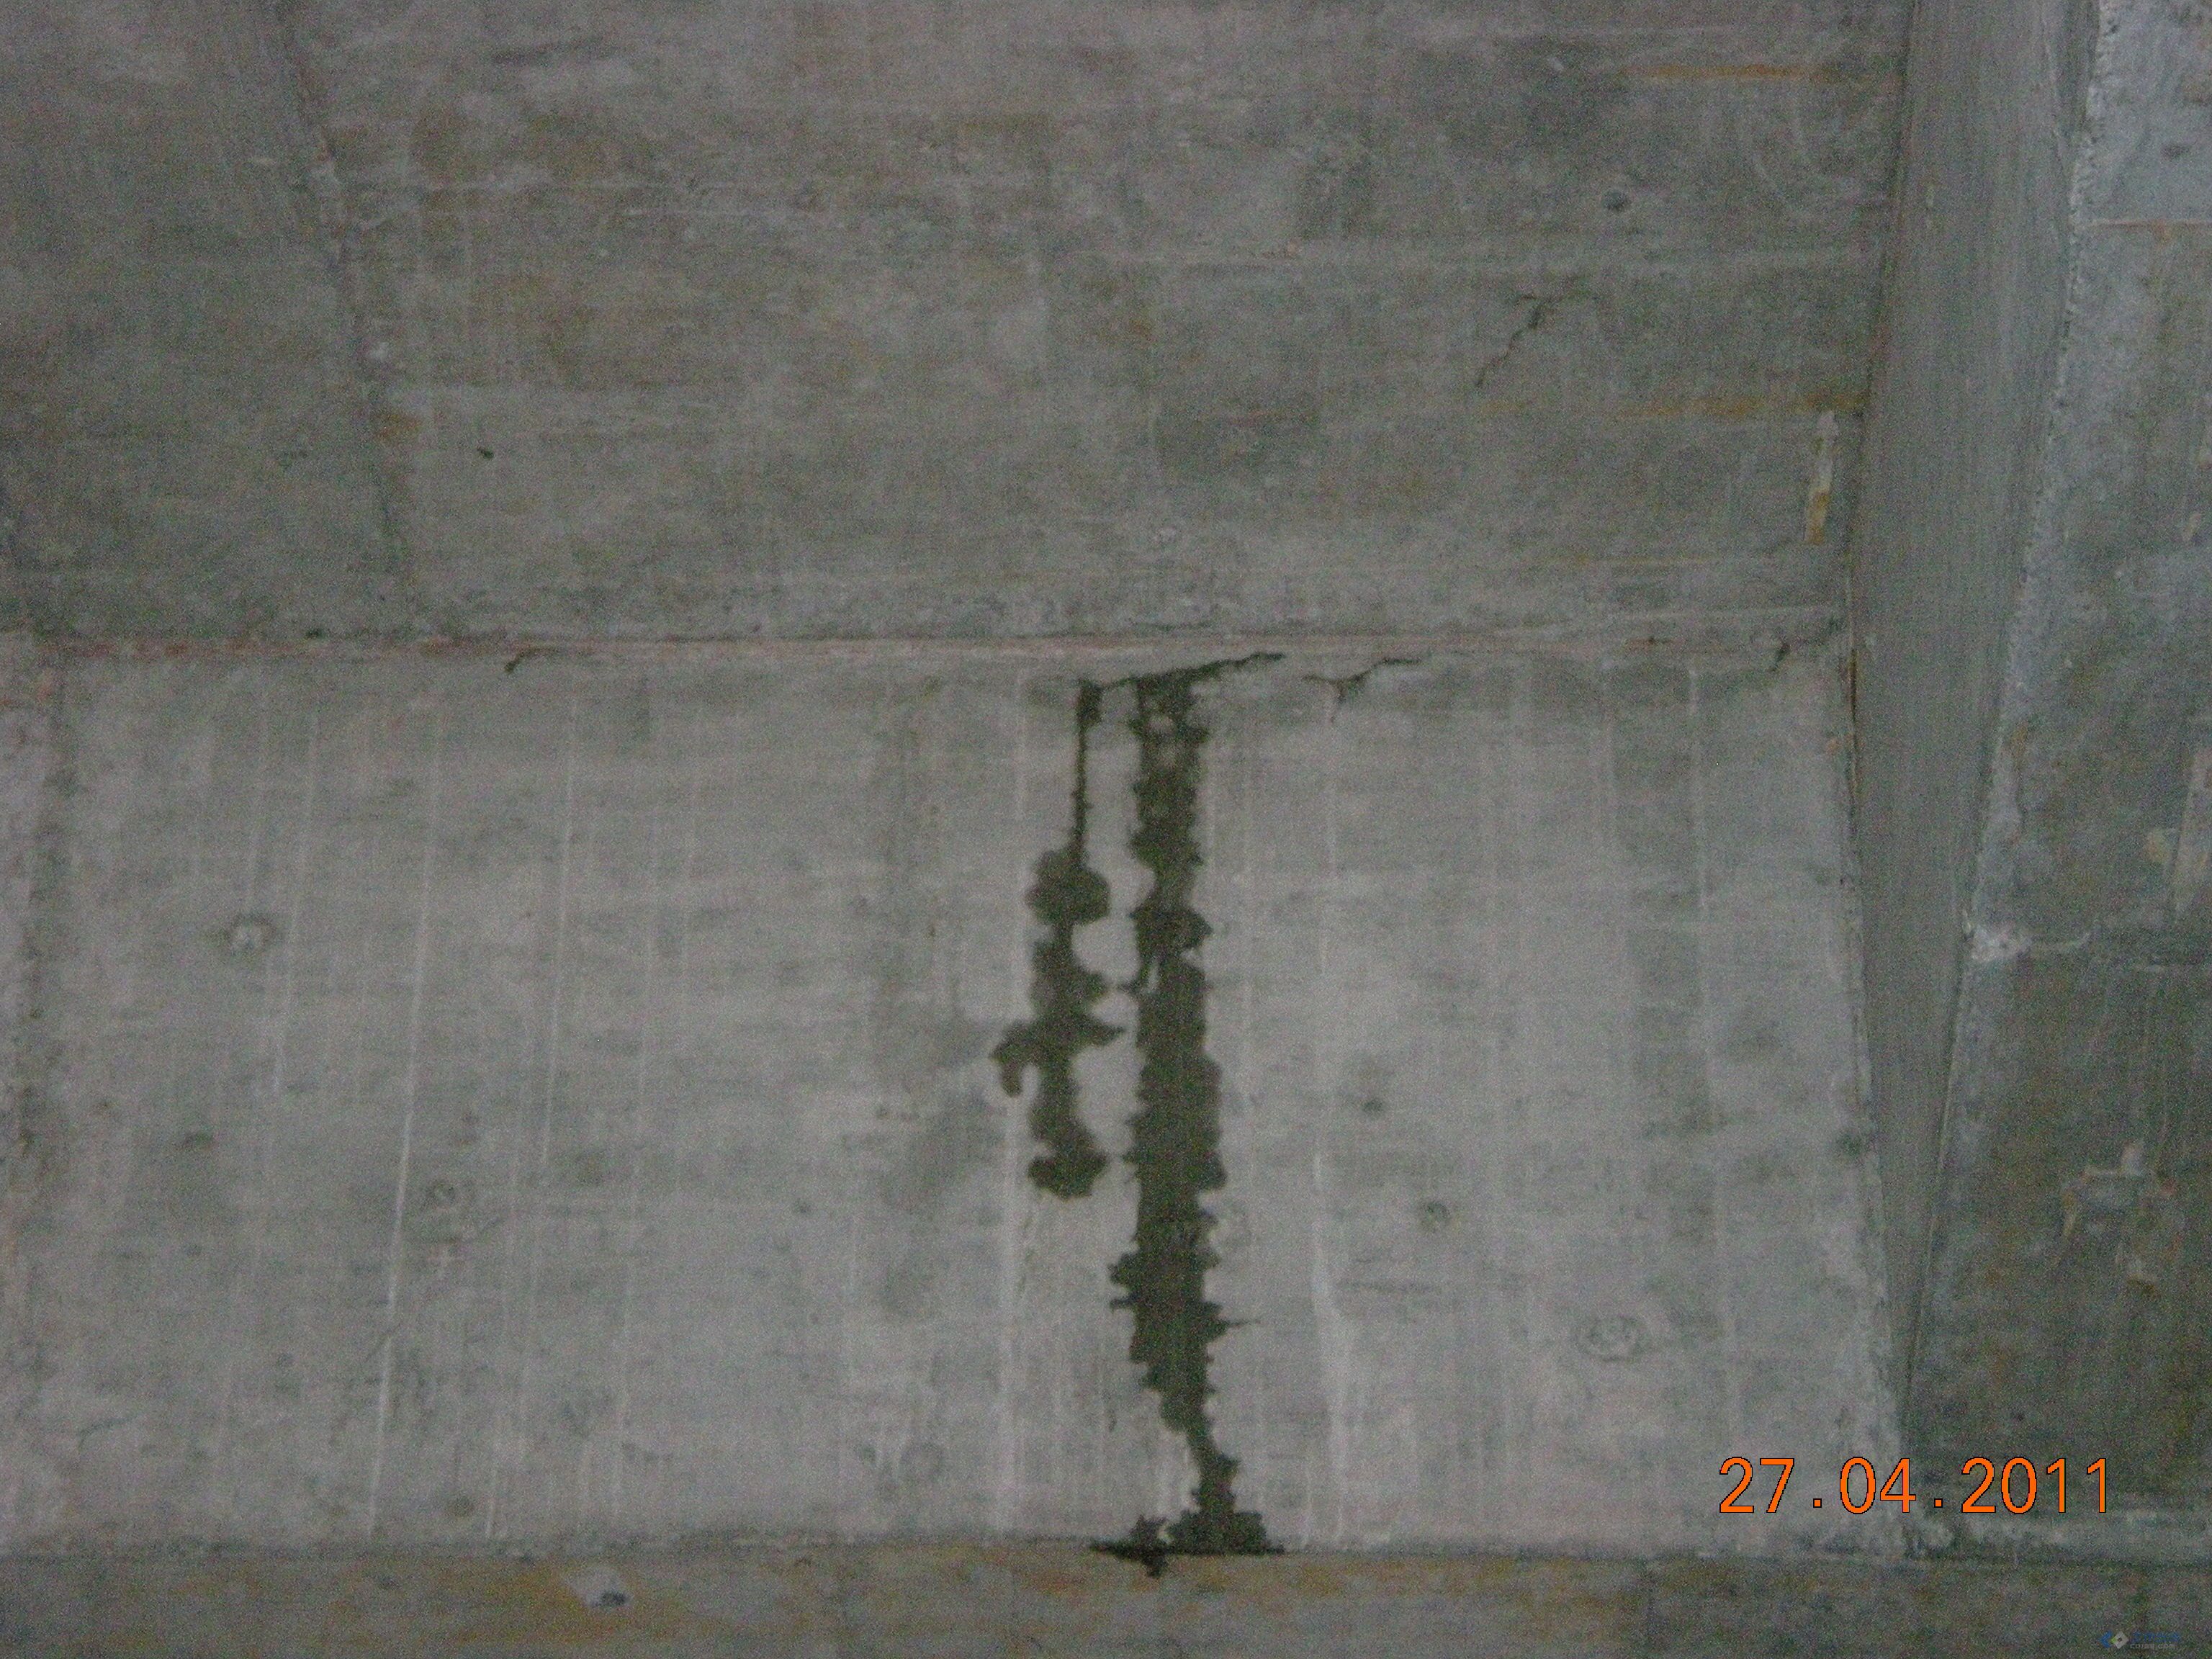 屋面砼浇捣完成后大面积的渗水